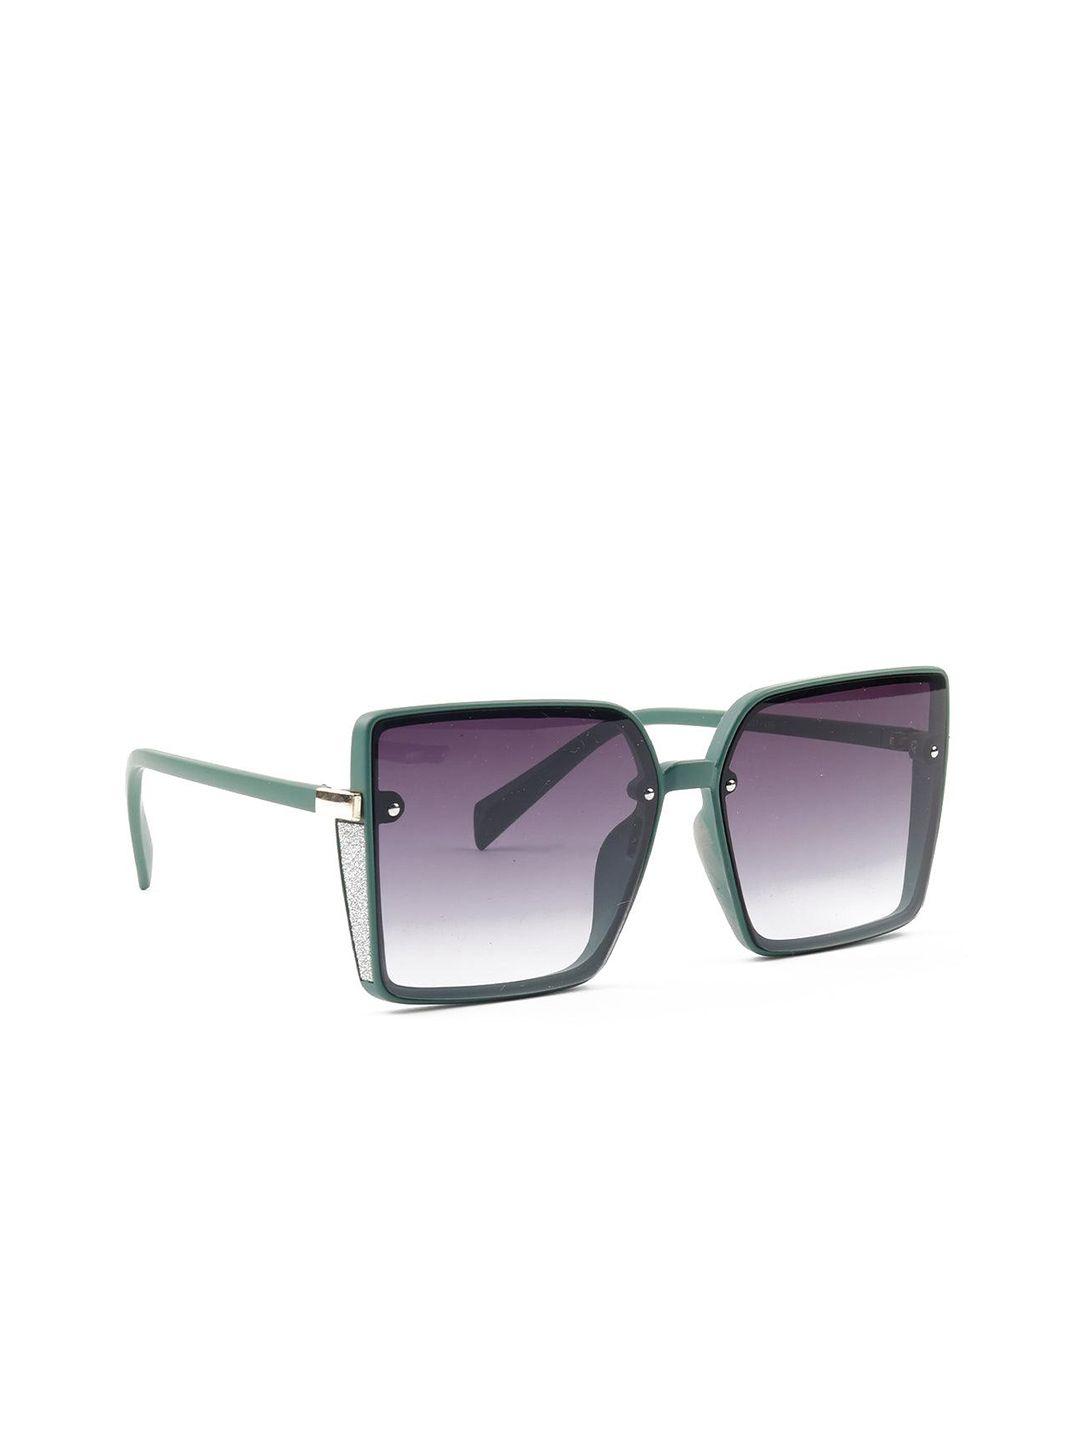 odette-women-lens-&-oversized-sunglasses-with-uv-protected-lens